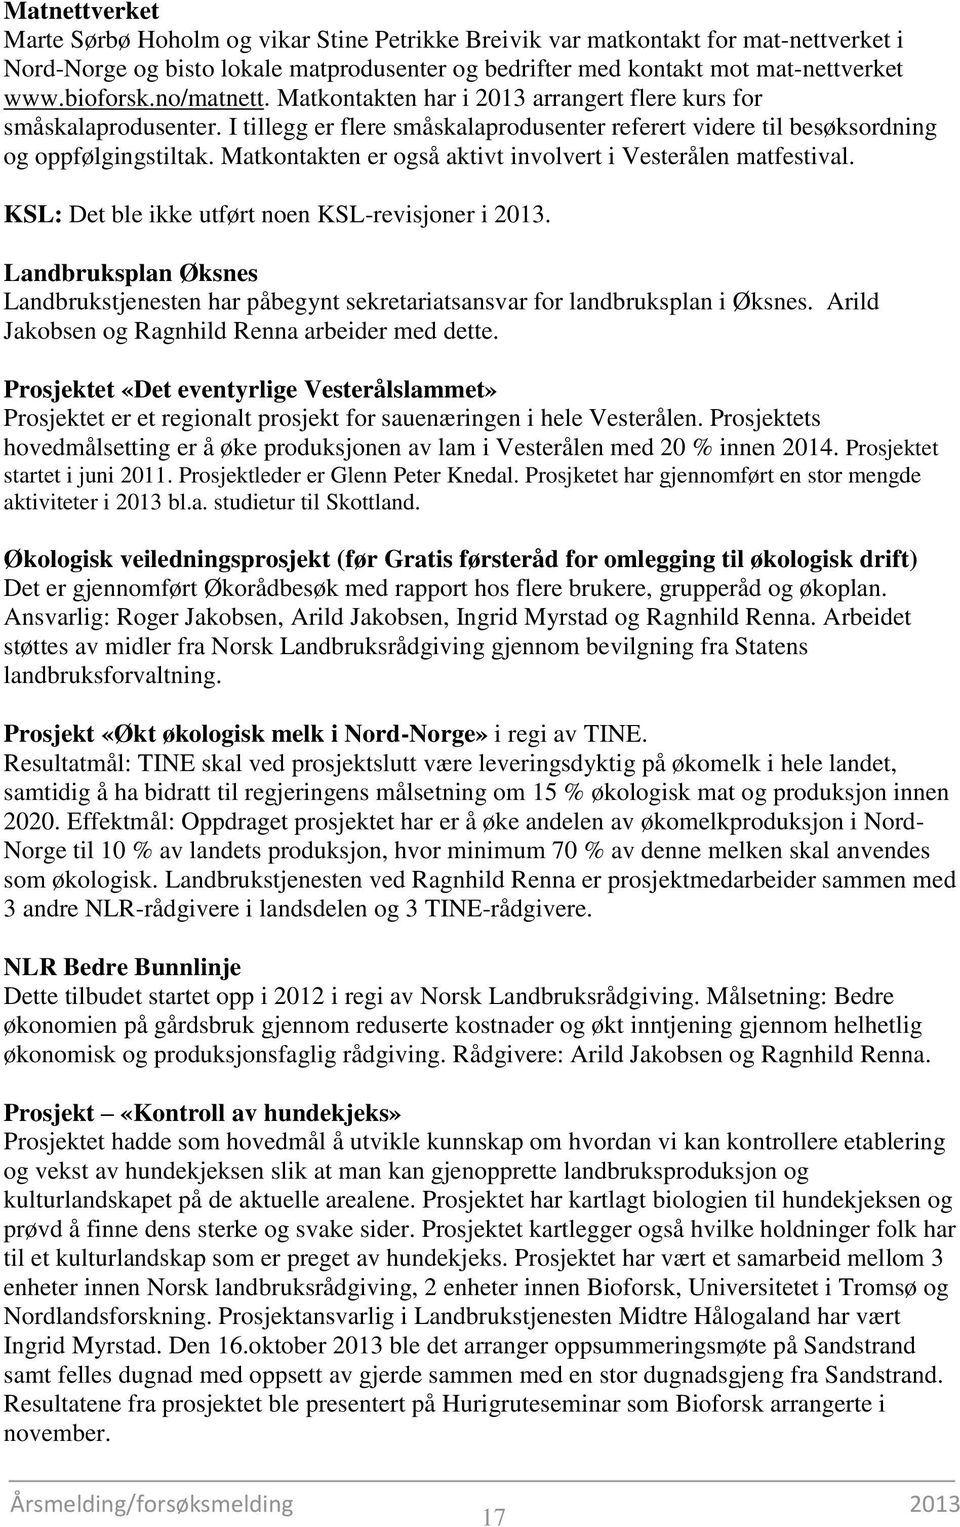 Matkontakten er også aktivt involvert i Vesterålen matfestival. KSL: Det ble ikke utført noen KSL-revisjoner i 2013.